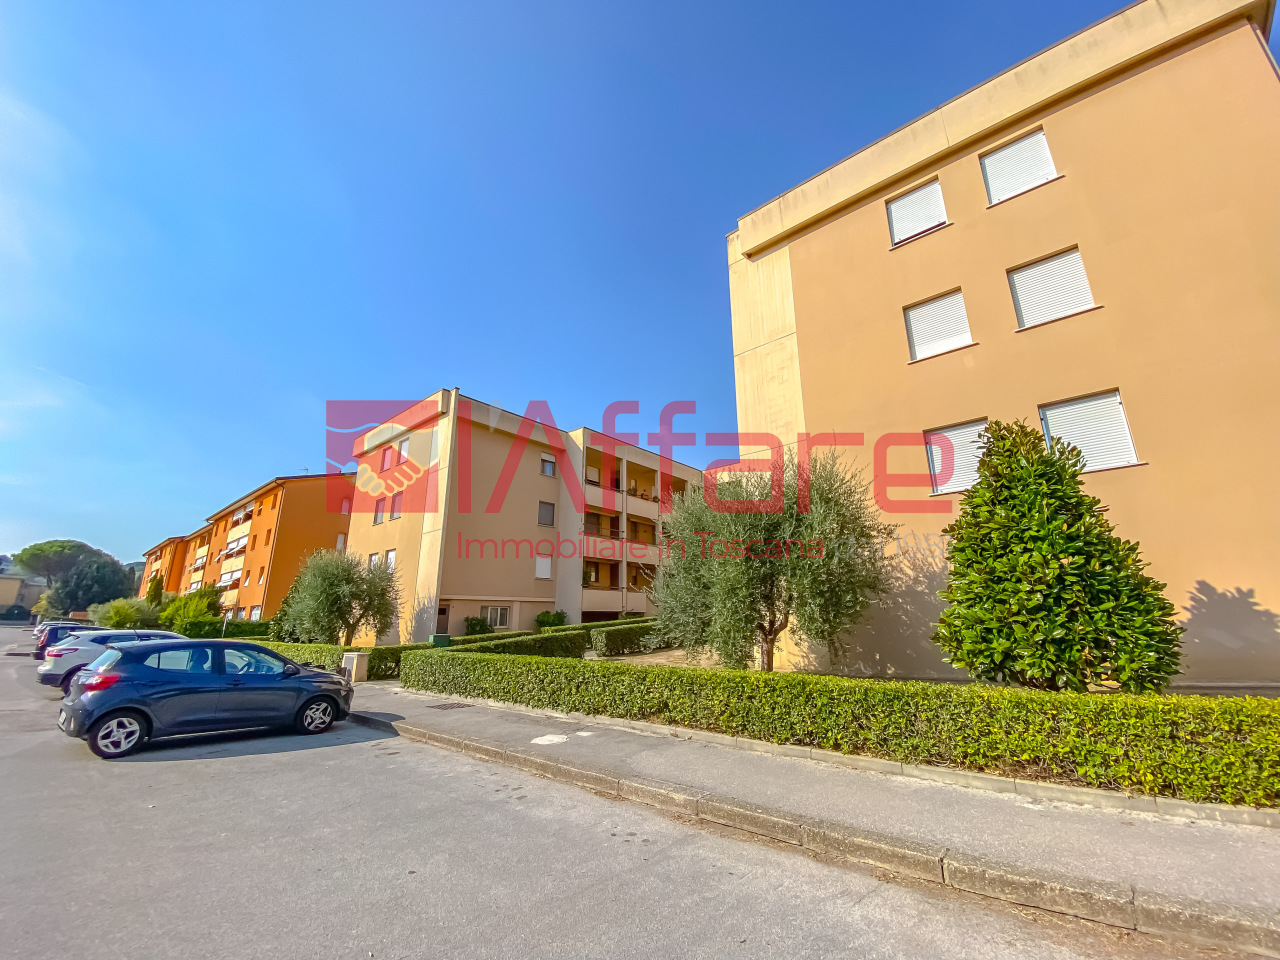 Appartamento in vendita a Pieve a Nievole, 5 locali, prezzo € 135.000 | PortaleAgenzieImmobiliari.it